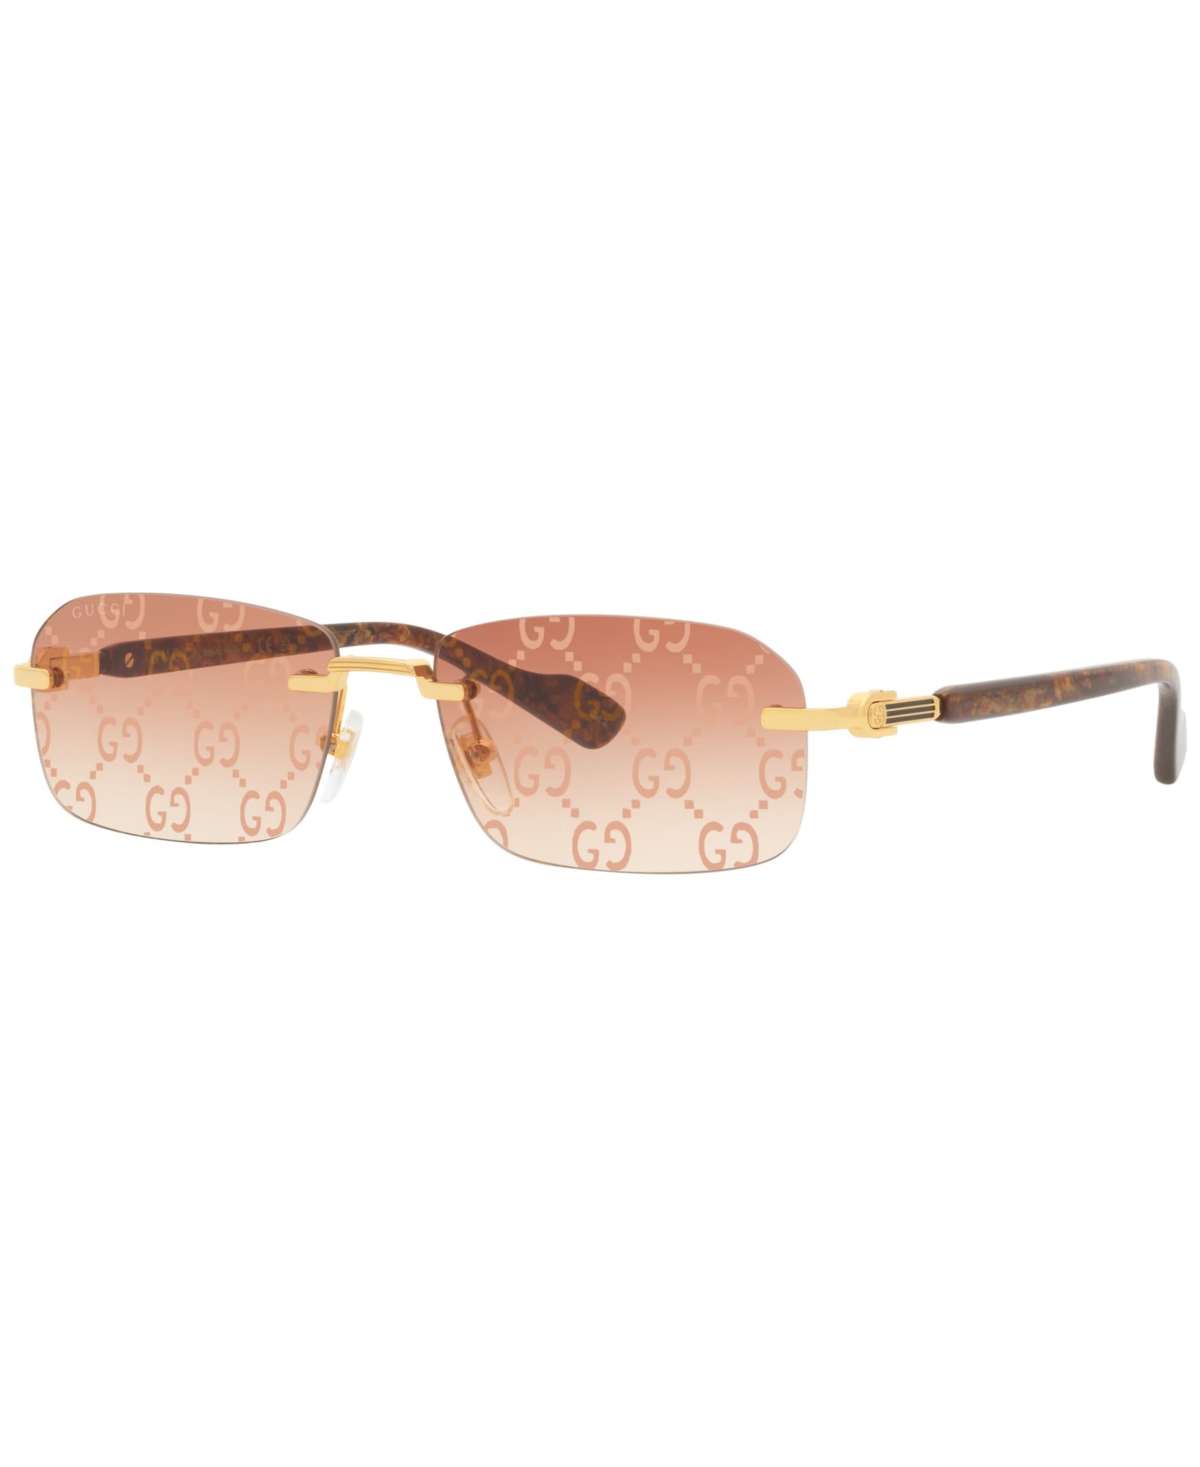 Gucci Men's Sunglasses, Gg1221s In Gold-tone